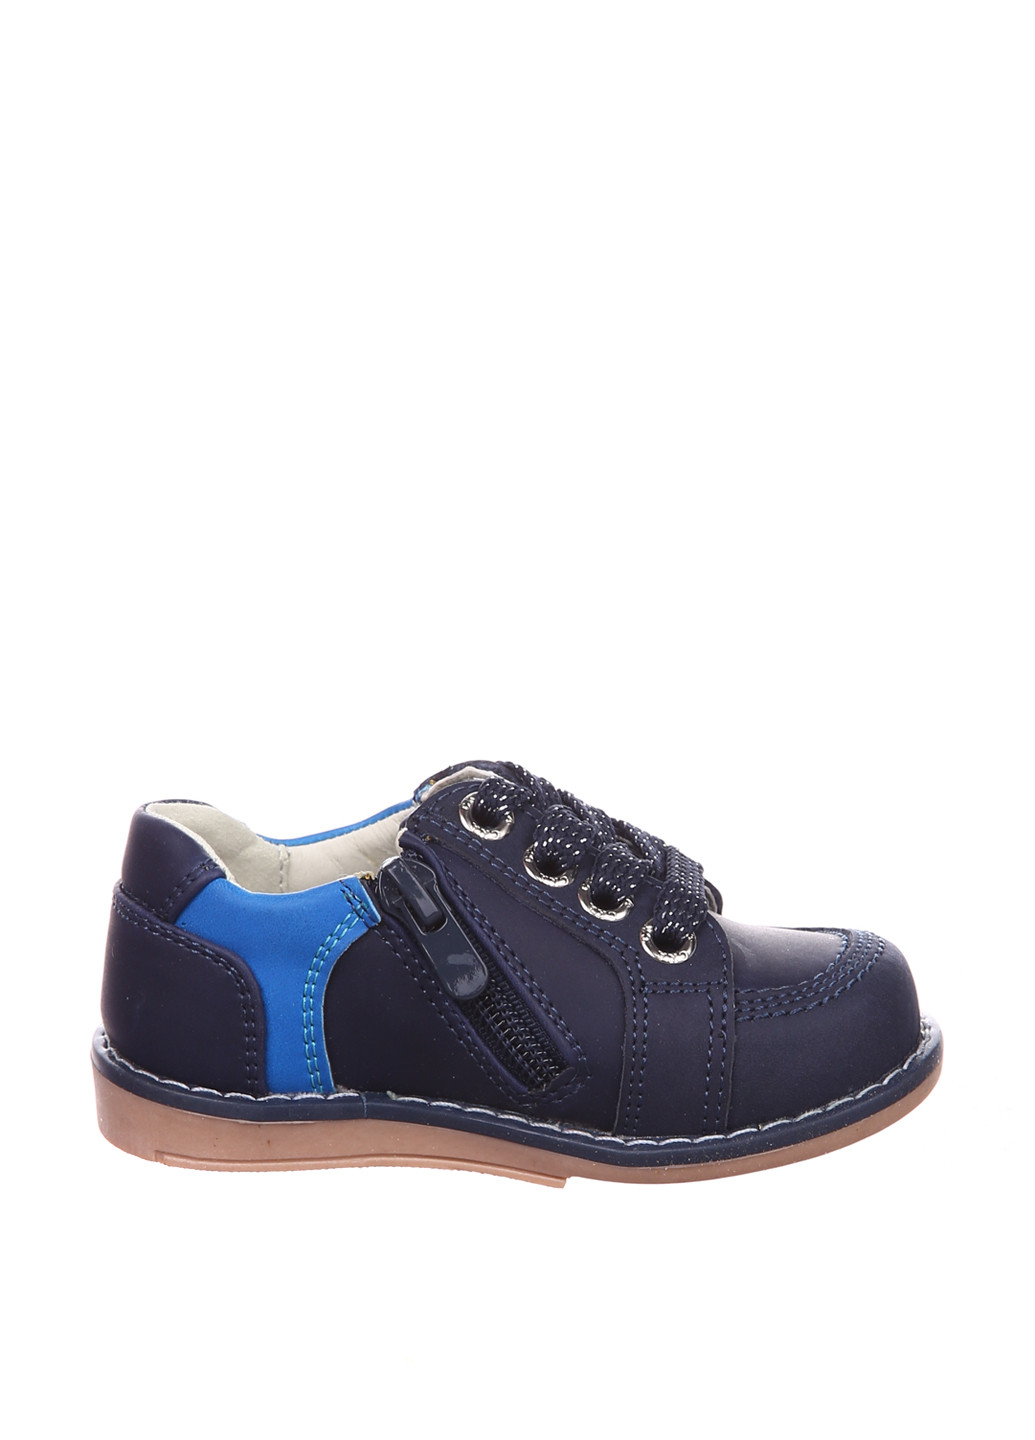 Синие туфли со шнурками Шалунишка